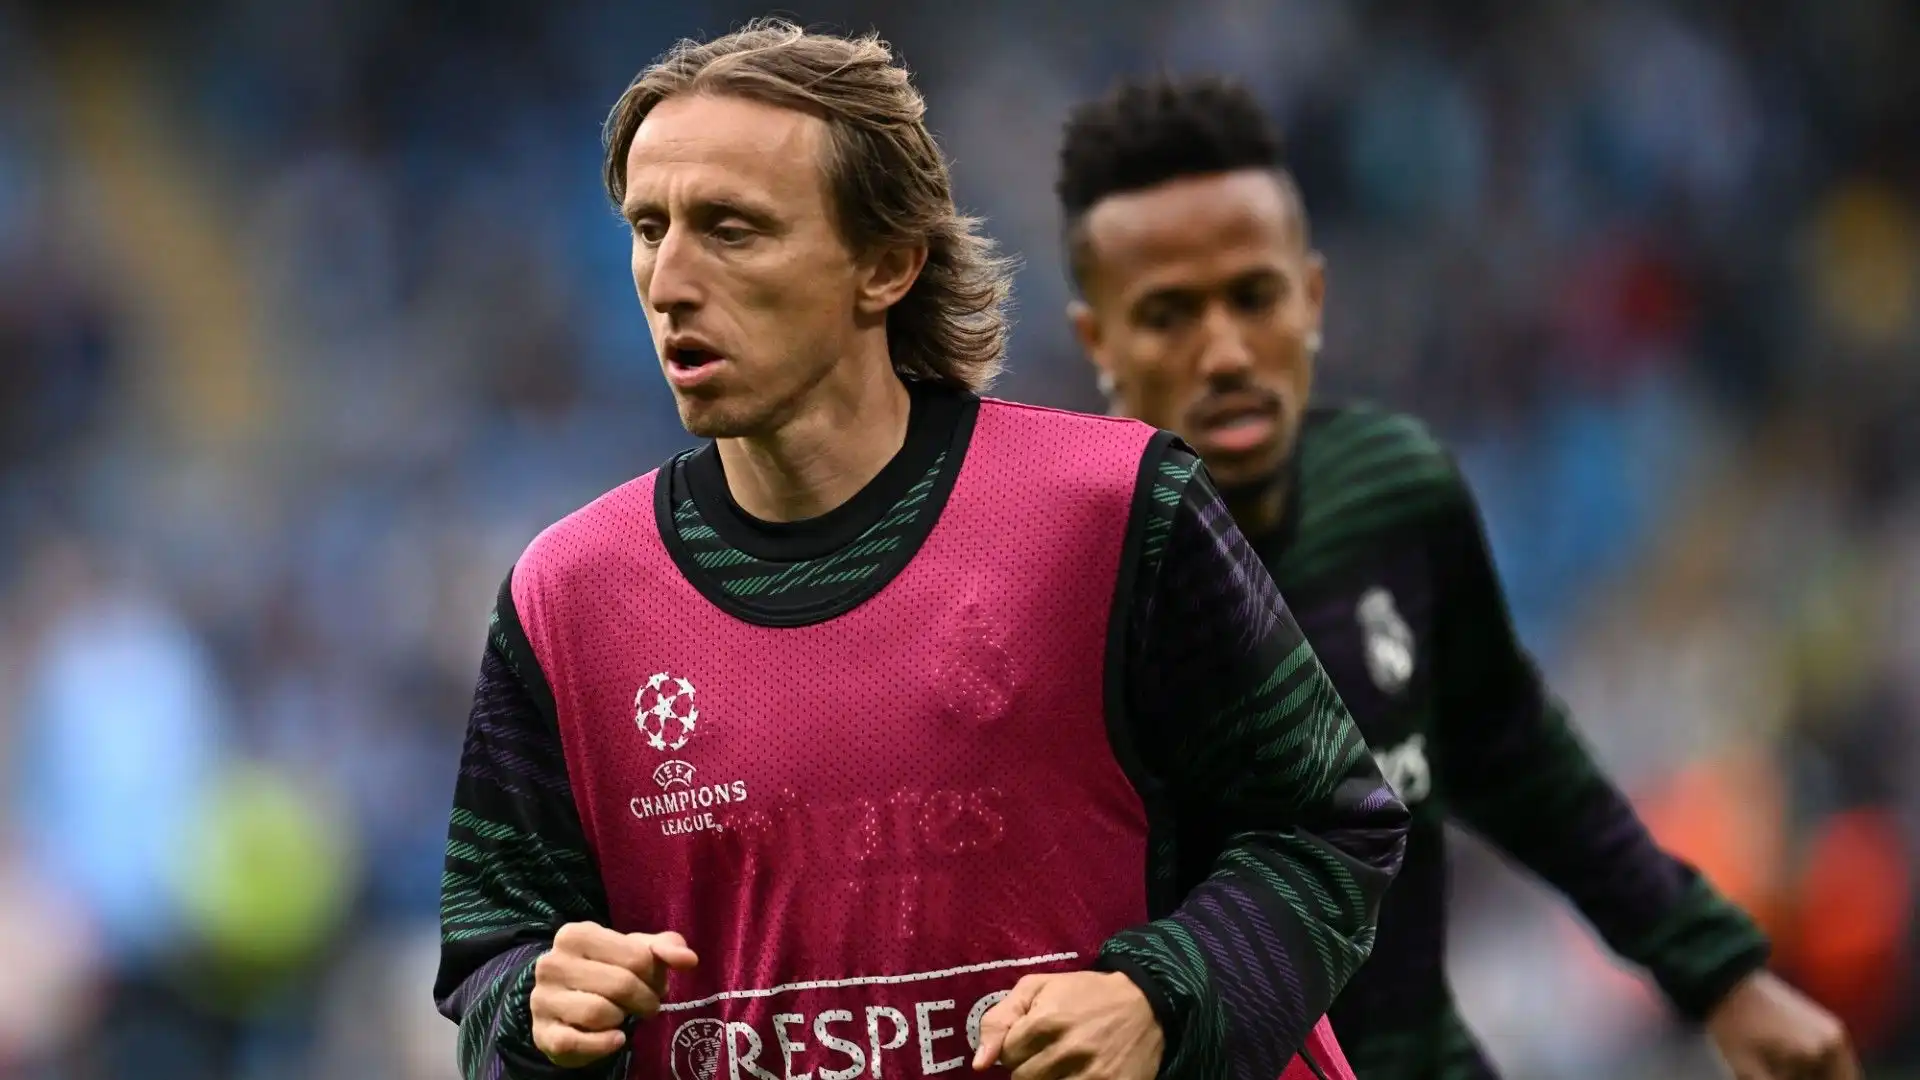 Nonostante l'età avanzata, Luka Modric è ancora un calciatore di primissimo livello